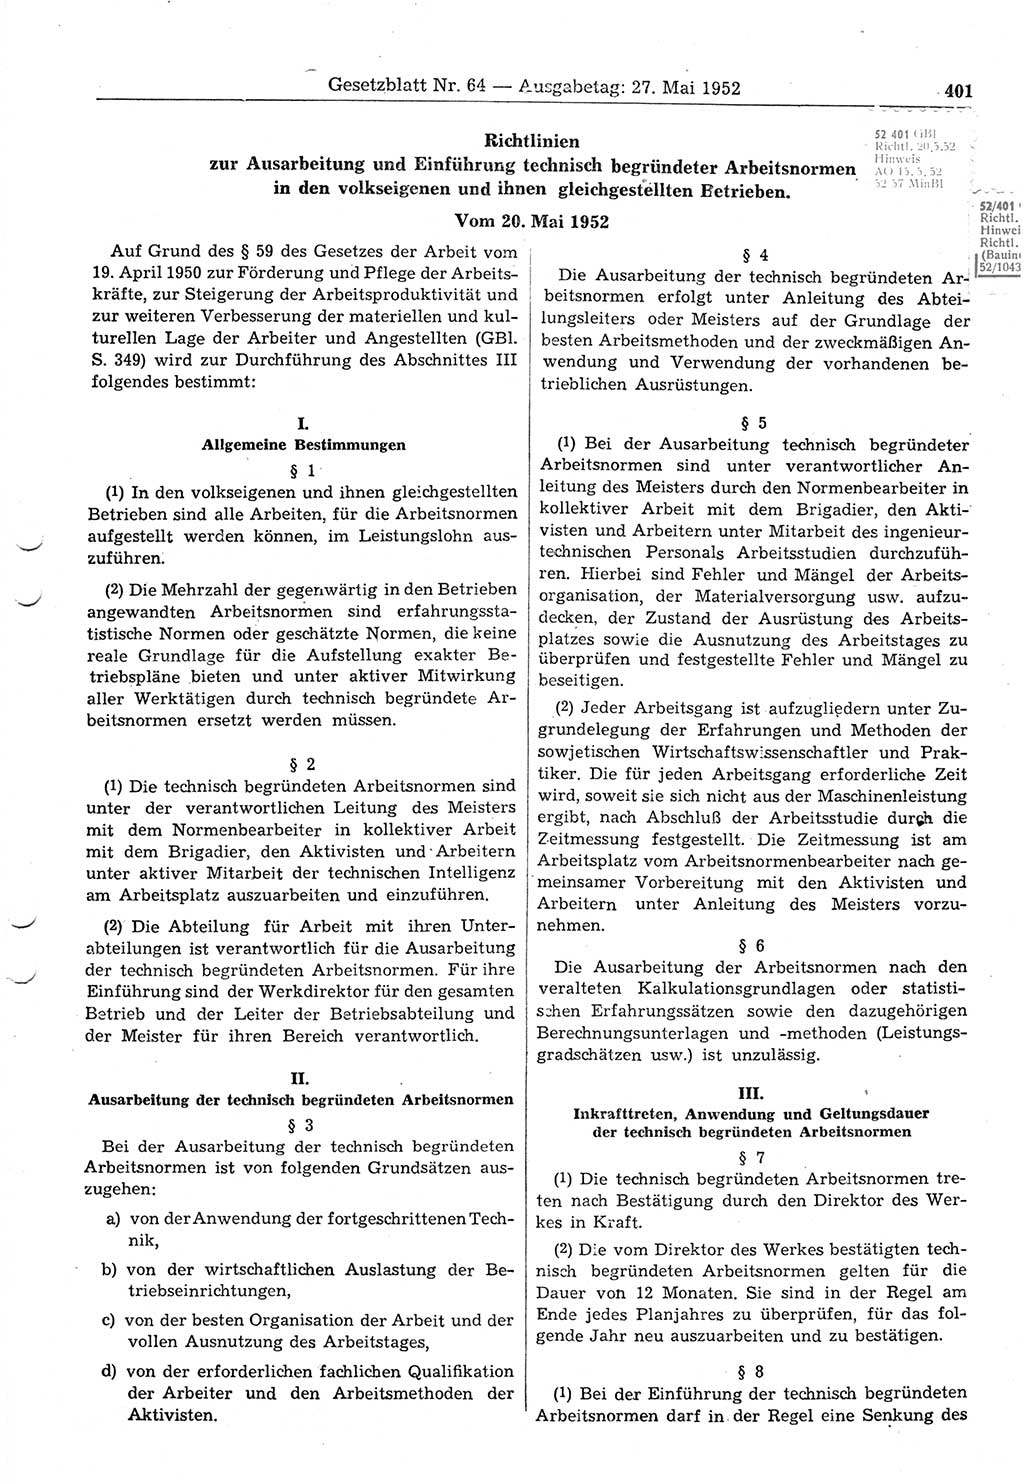 Gesetzblatt (GBl.) der Deutschen Demokratischen Republik (DDR) 1952, Seite 401 (GBl. DDR 1952, S. 401)